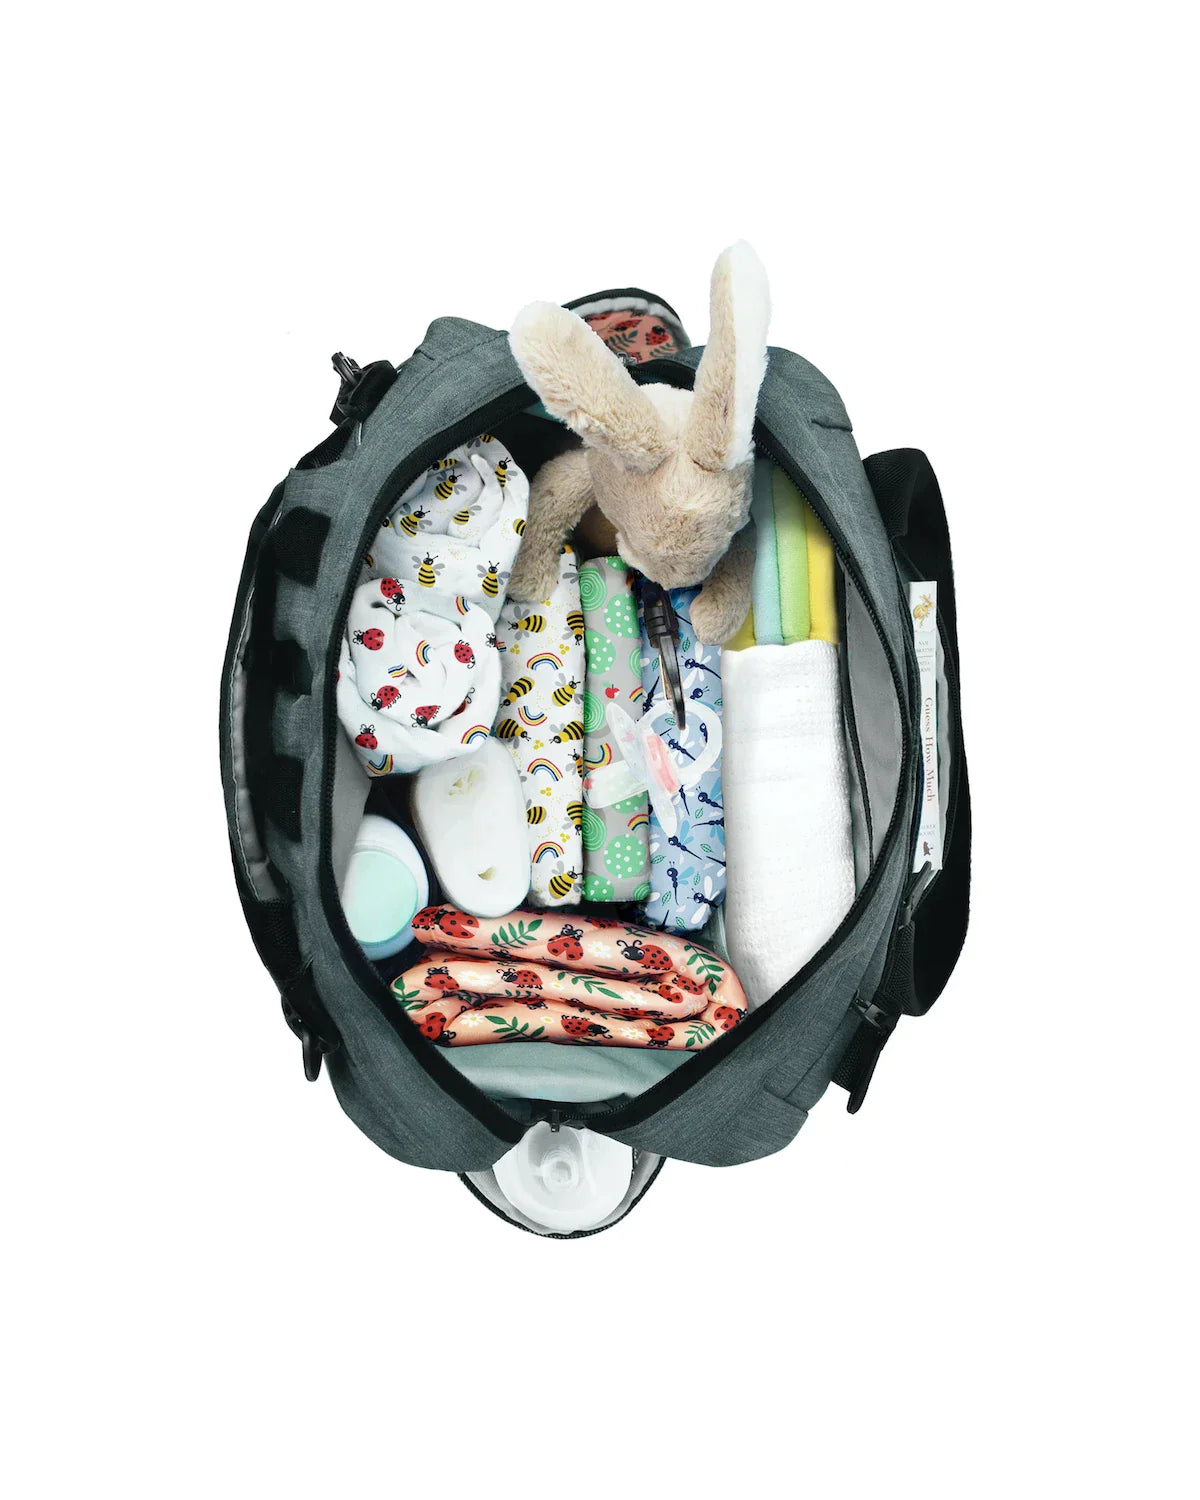 baby & beyond diaper bag - Bambino Mio (EU)